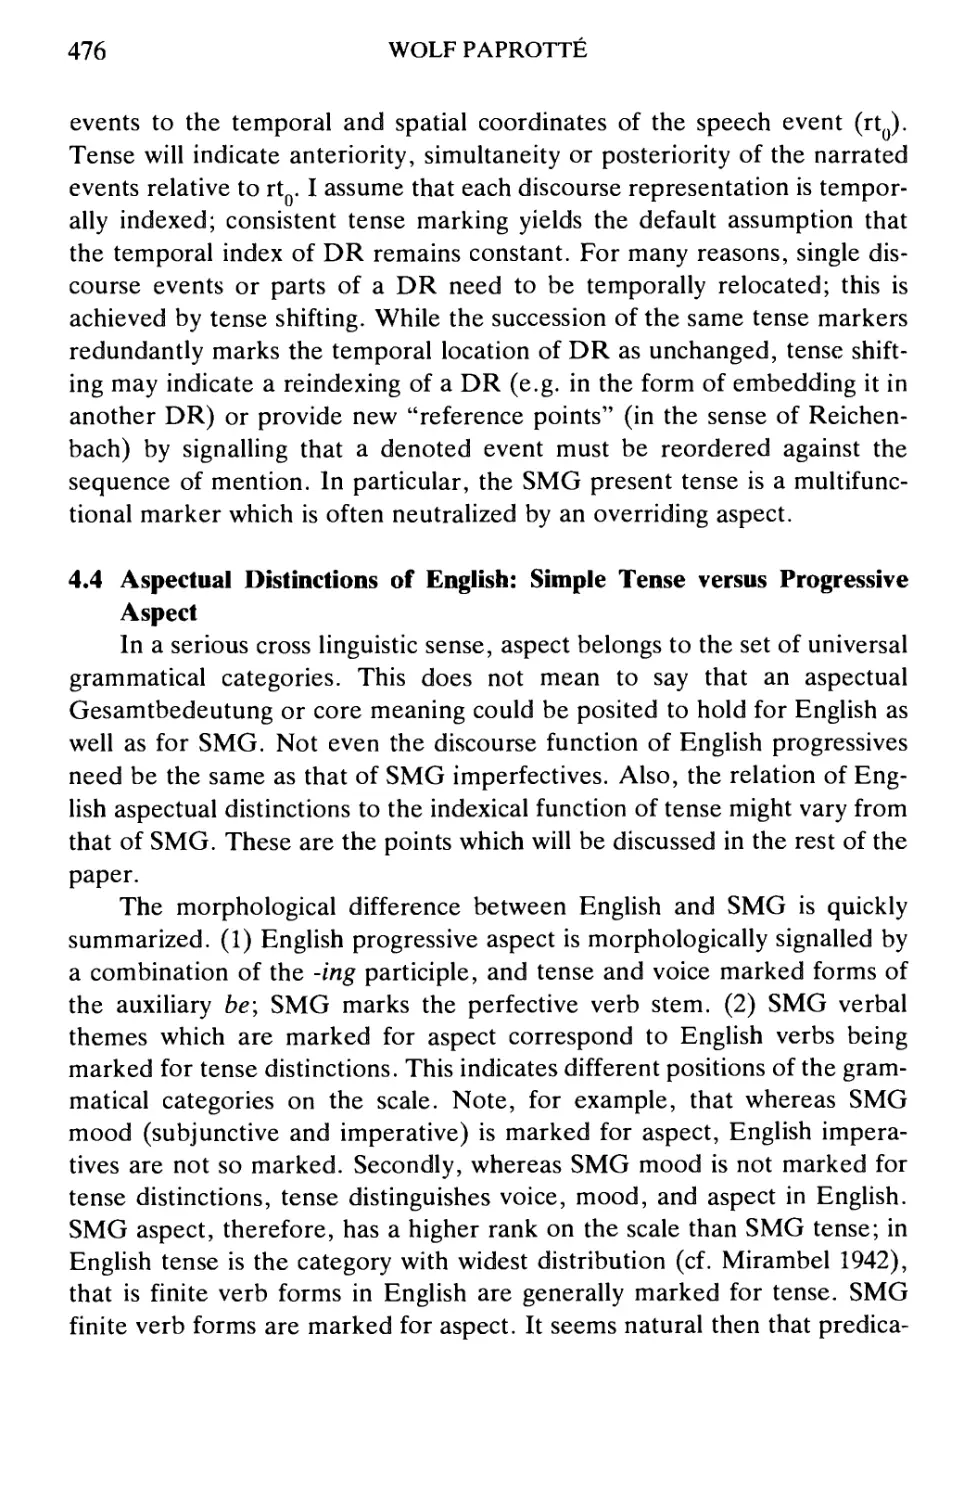 4.4 Aspectual Distinctions of English: Simple Tense versus Progressive Aspect